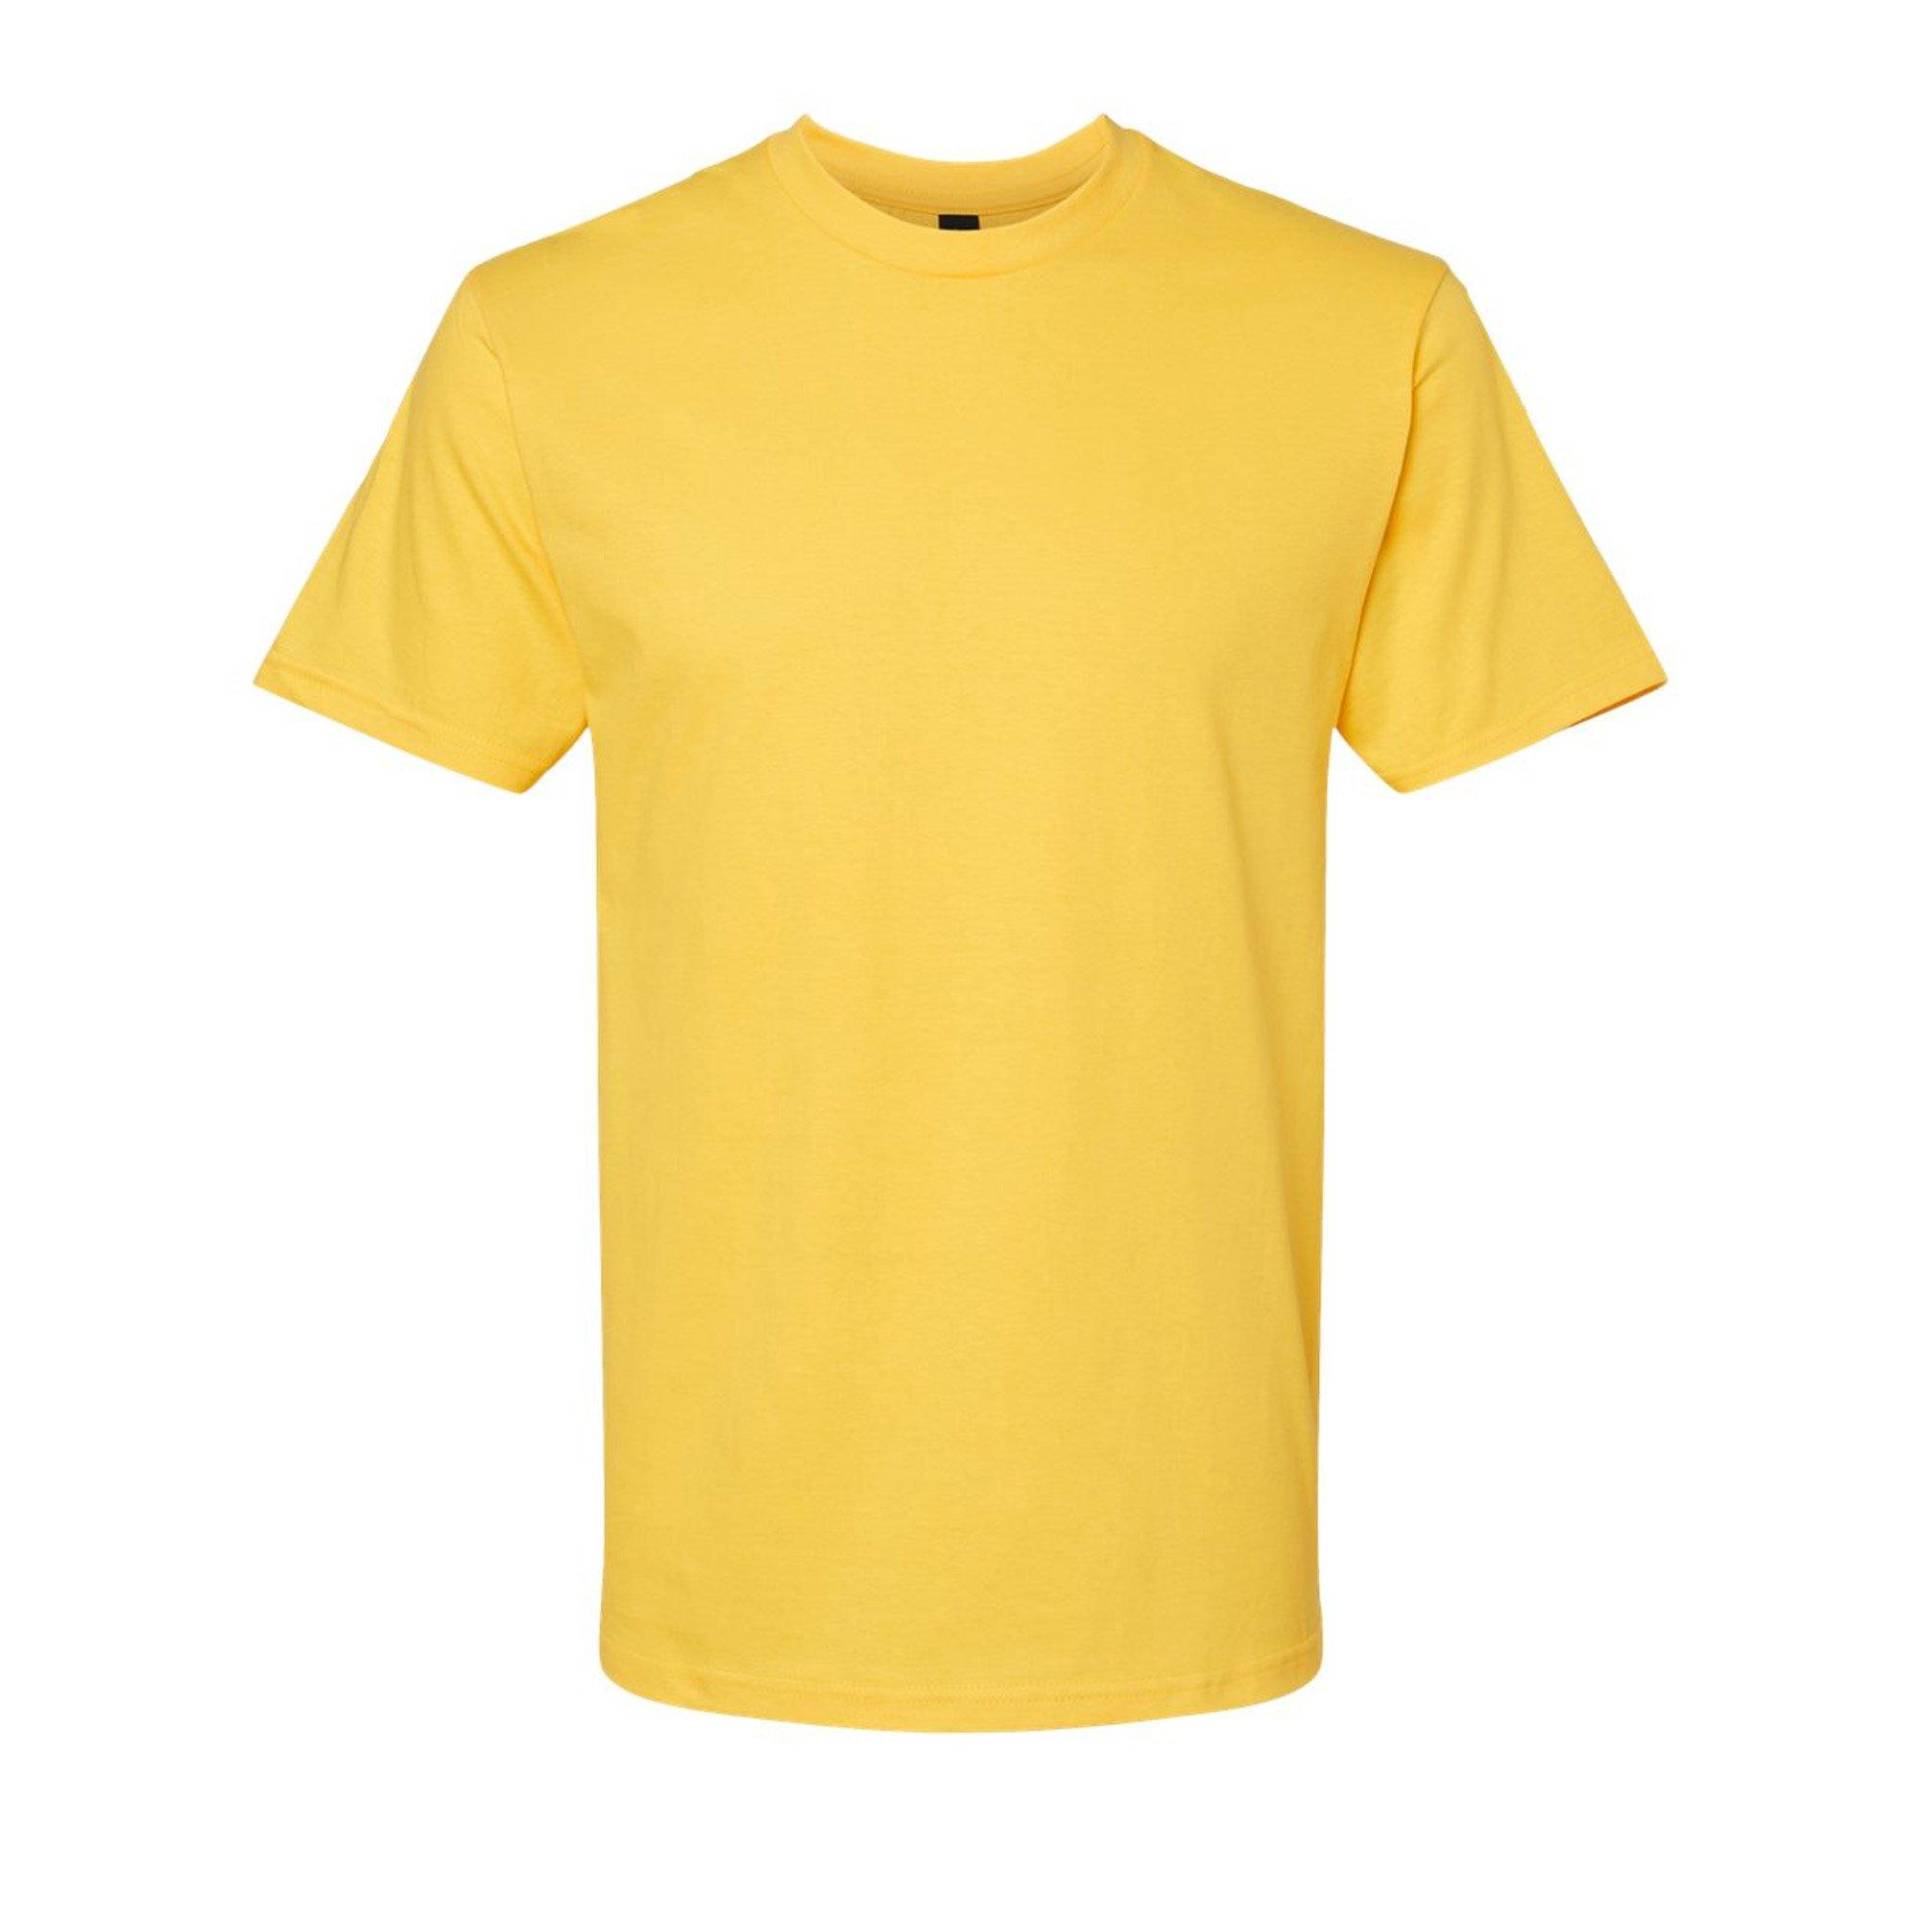 Softstyle Tshirt Damen Gelb Bunt XXL von Gildan